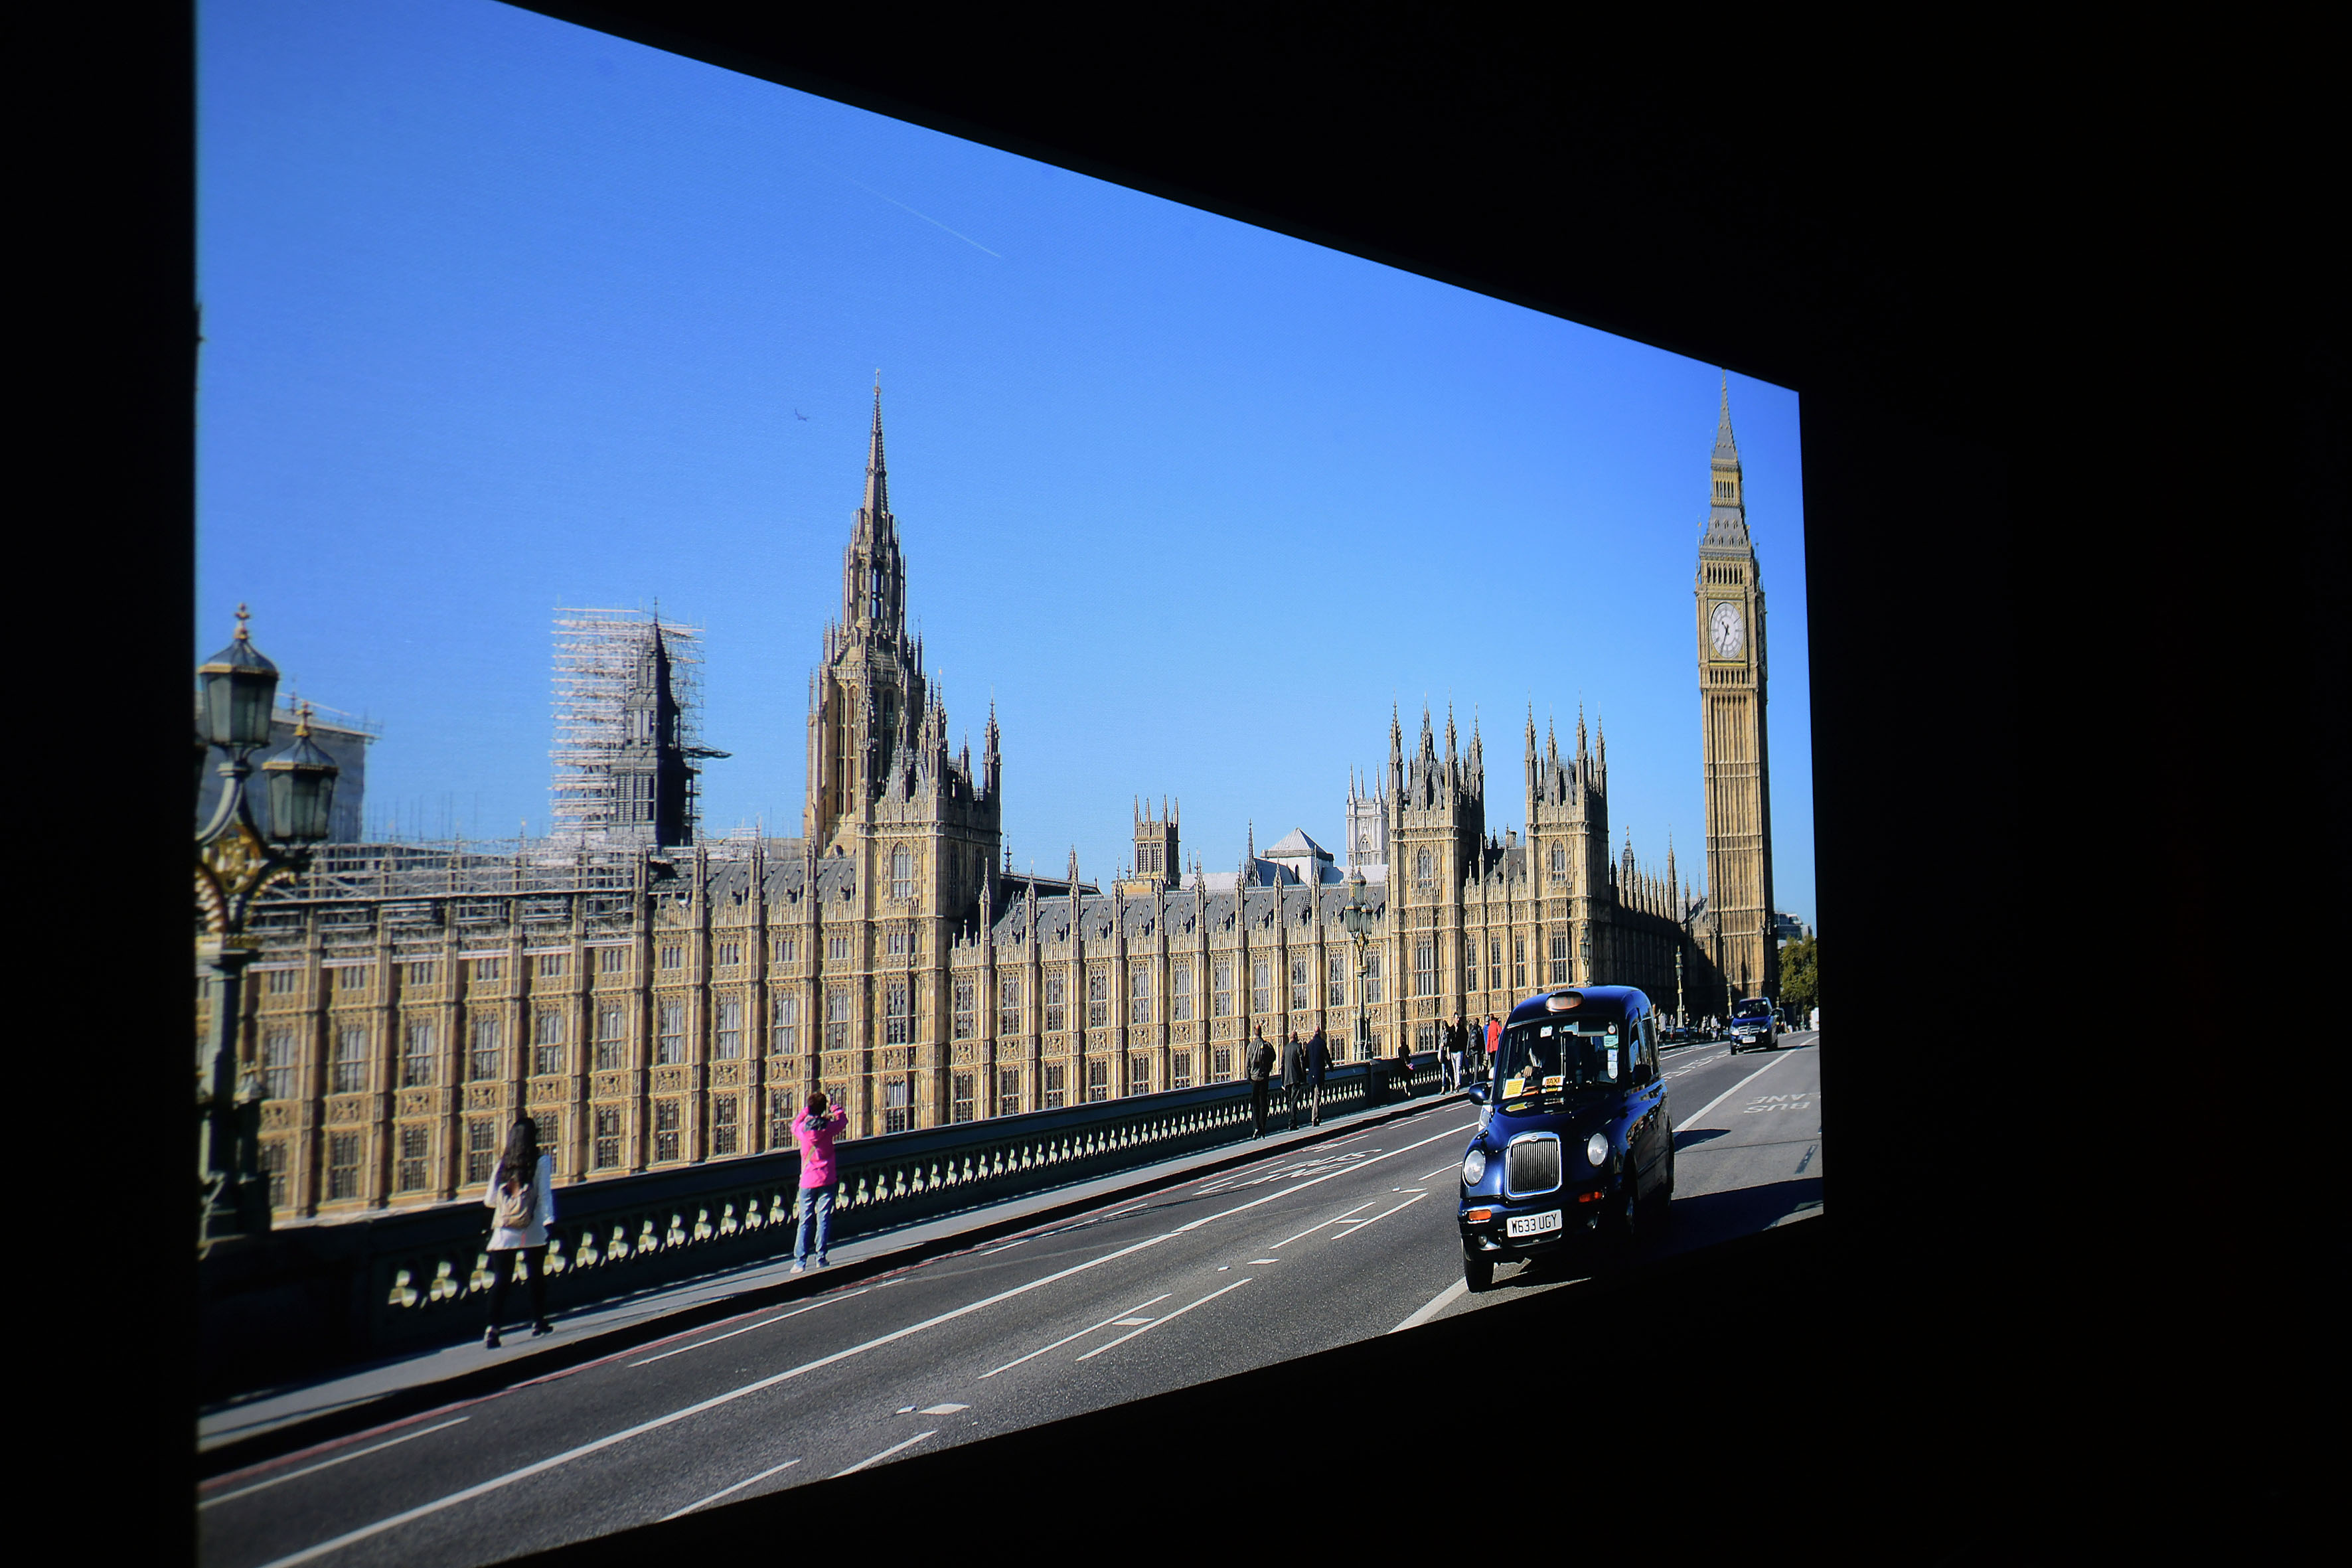 Foto: Michael B. Rehders Meine 4K-Aufnahme von London beeindruckt nachhaltig mit dem BenQ W2700. Der Blauverlauf am Himmel ist absolut stufenlos. Das Ziffernblatt am Big Ben ist detailliert zu sehen. Selbst die Triebwerke des klitzekleinen Flugzeugs am Himmel sind erkennbar.